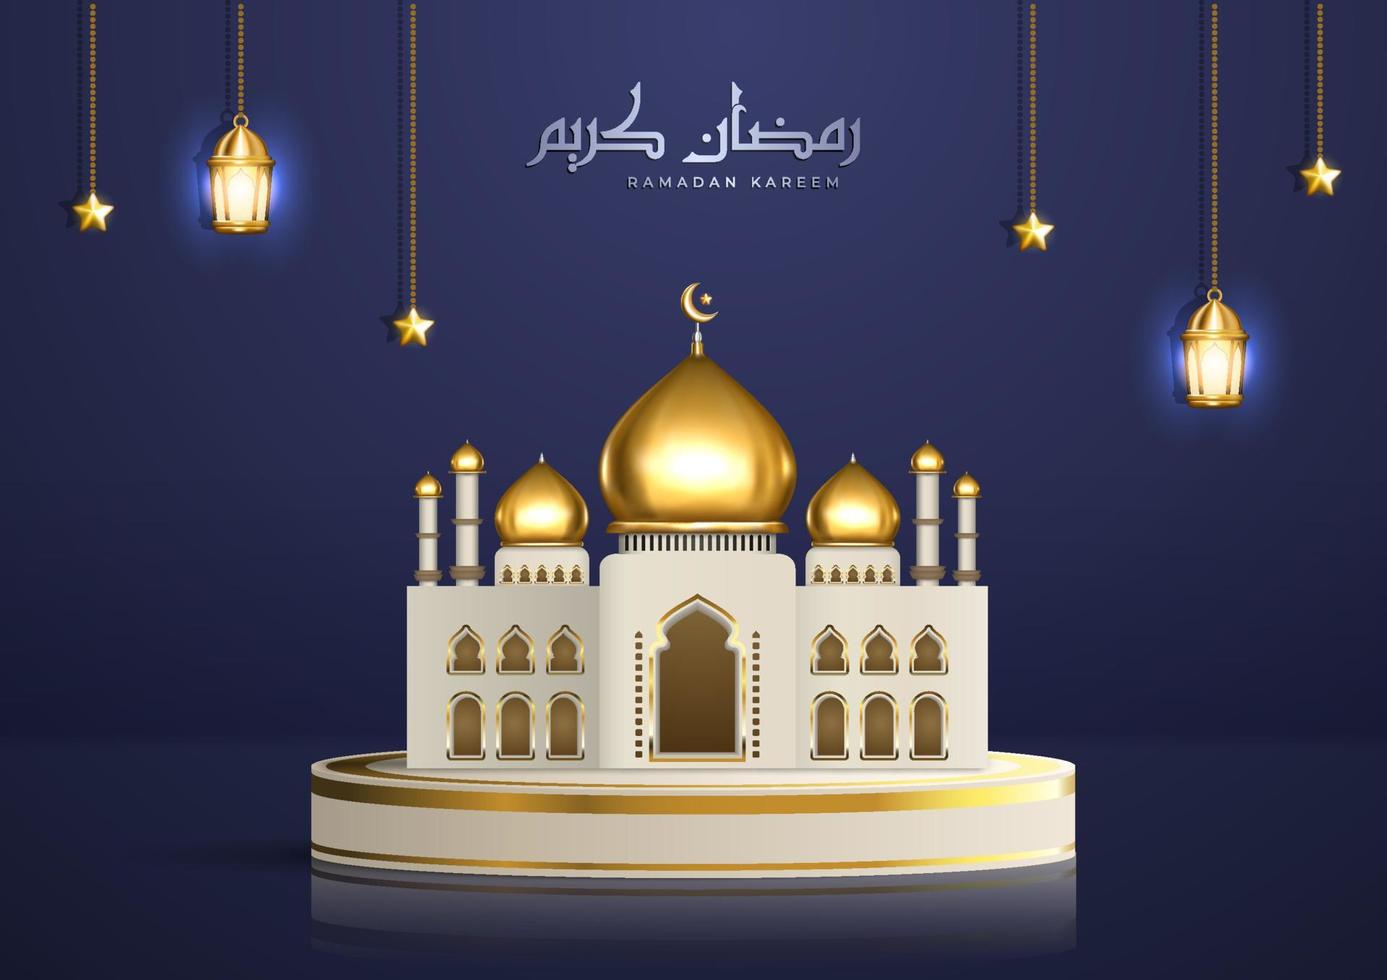 ilustración islámica realista con caligrafía árabe y mezquita dorada en el podio del producto. saludo de ramadan kareem con linternas colgantes y estrellas vector